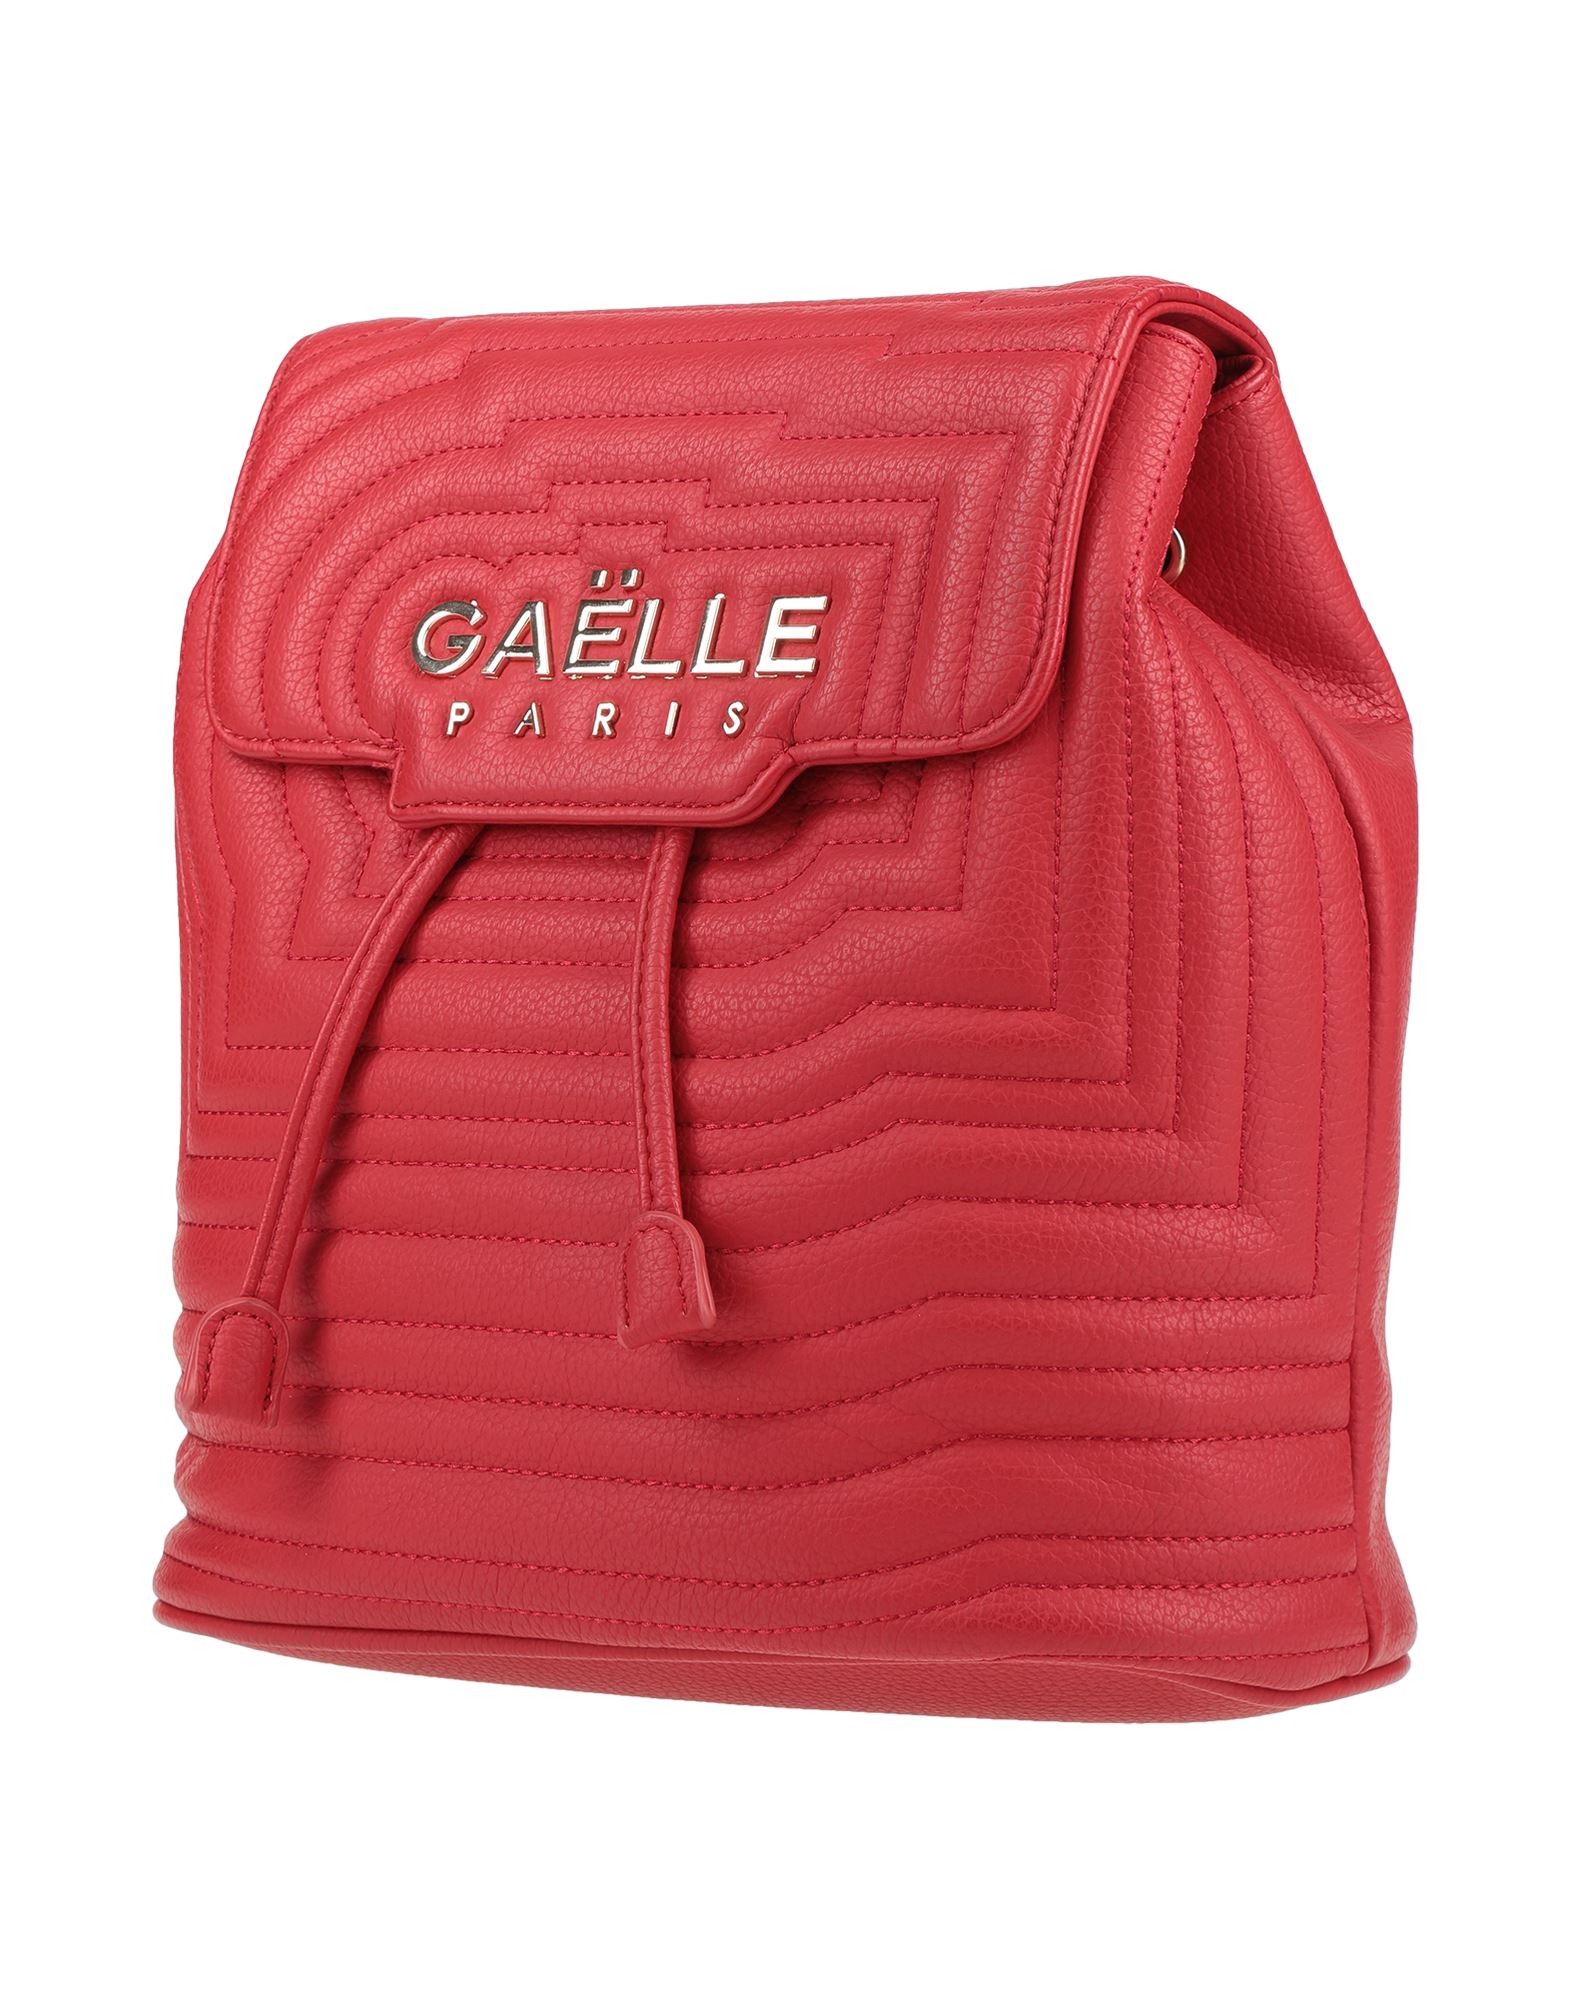 Gaelle Paris Backpacks & Fanny Packs In Red